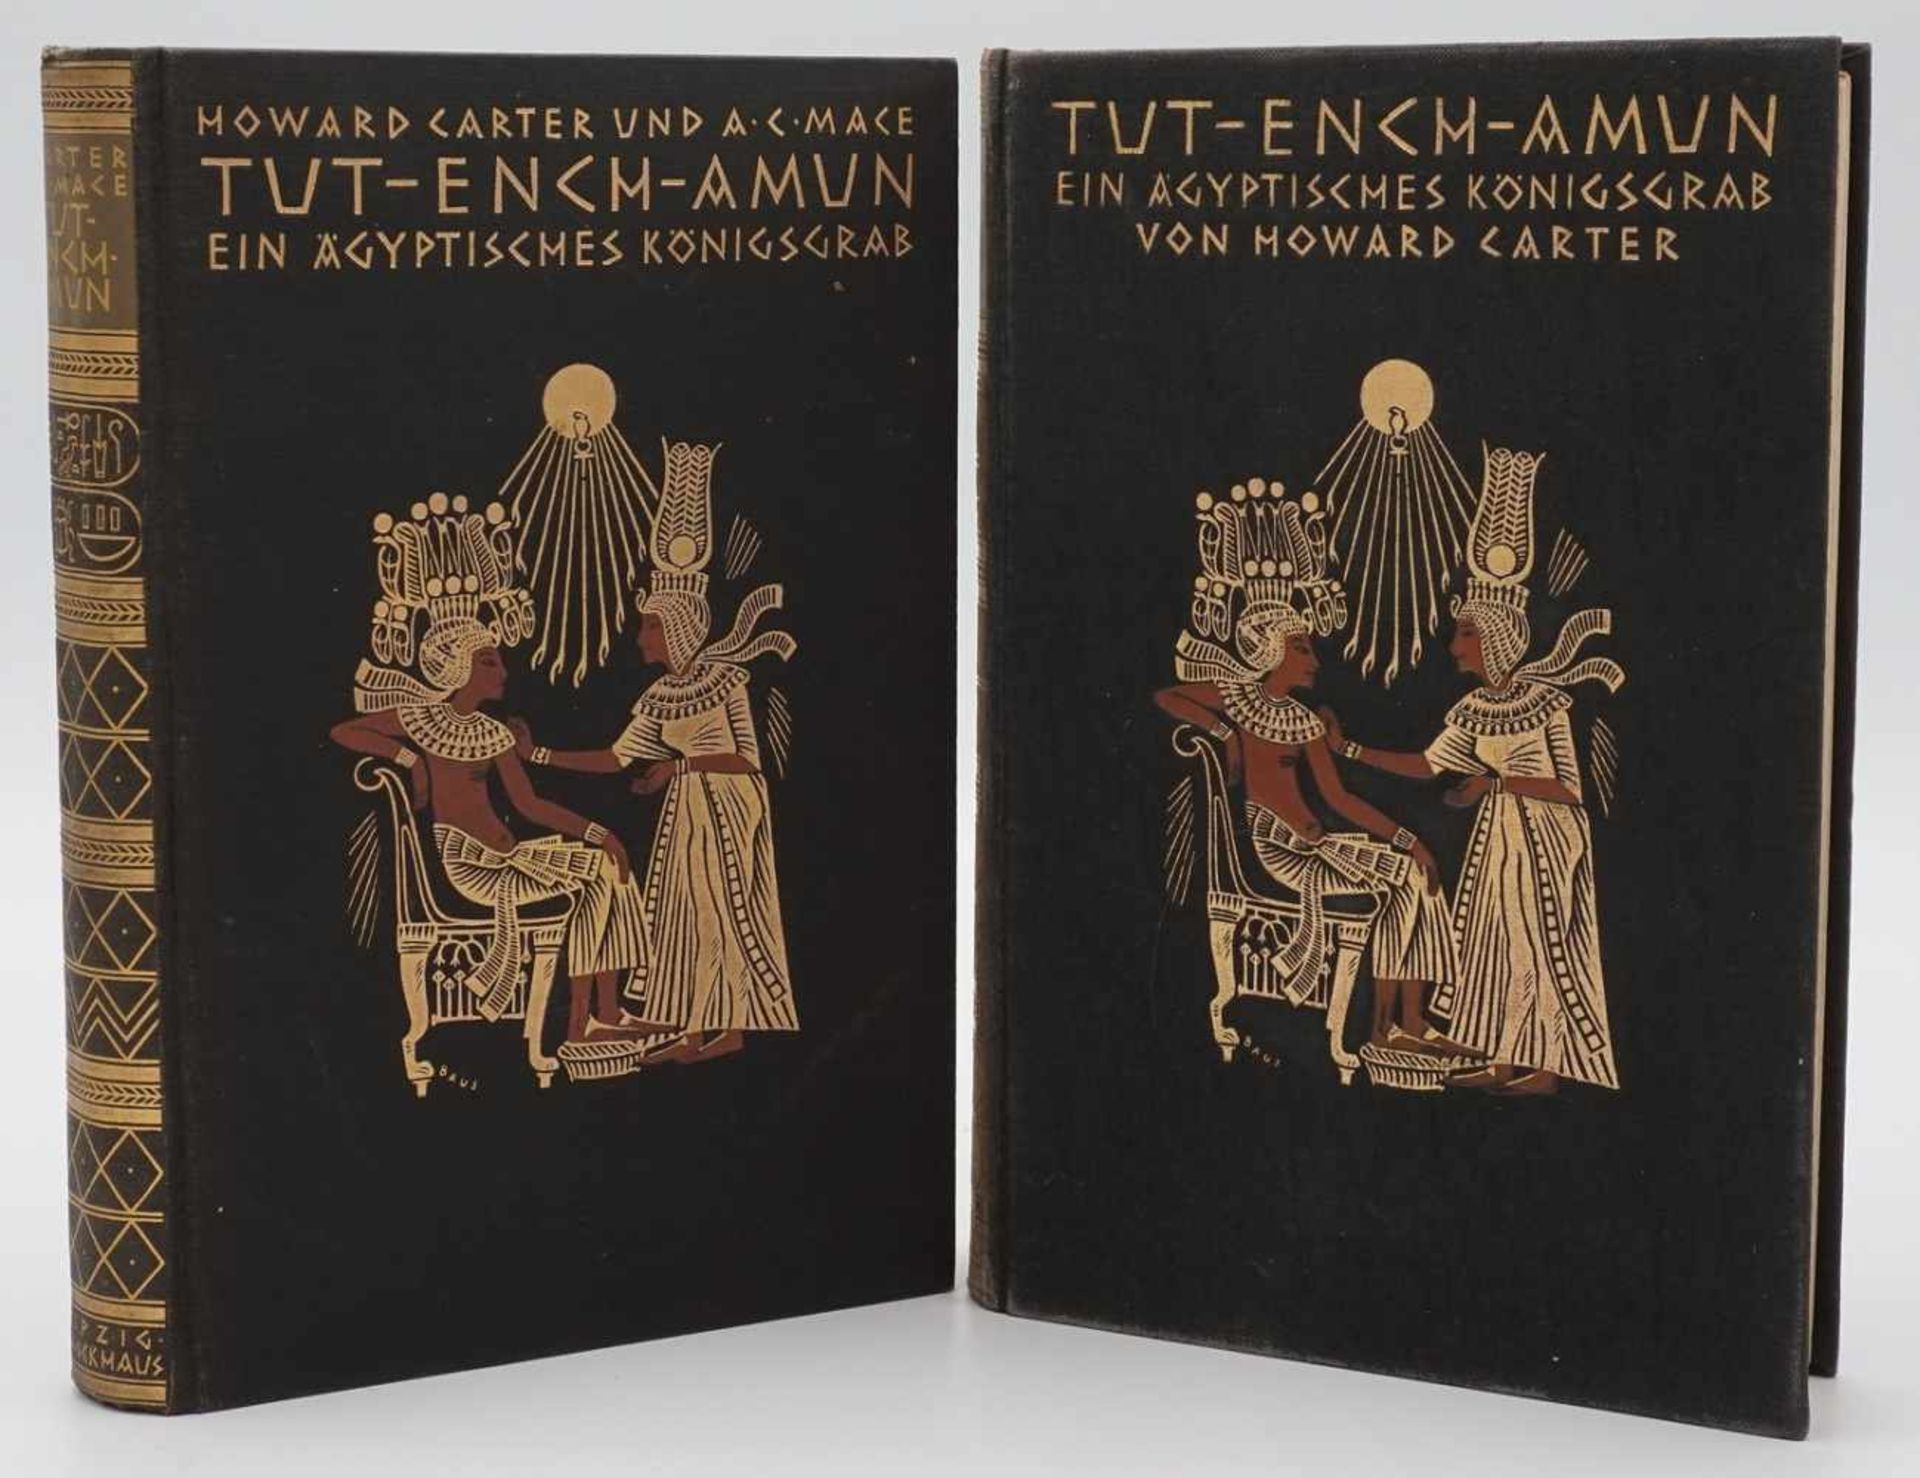 Howard Carter, "Tut-Ench-Amun - Ein ägyptisches Königsgrab"zwei Bände, 1924, Inhalt: Der König und